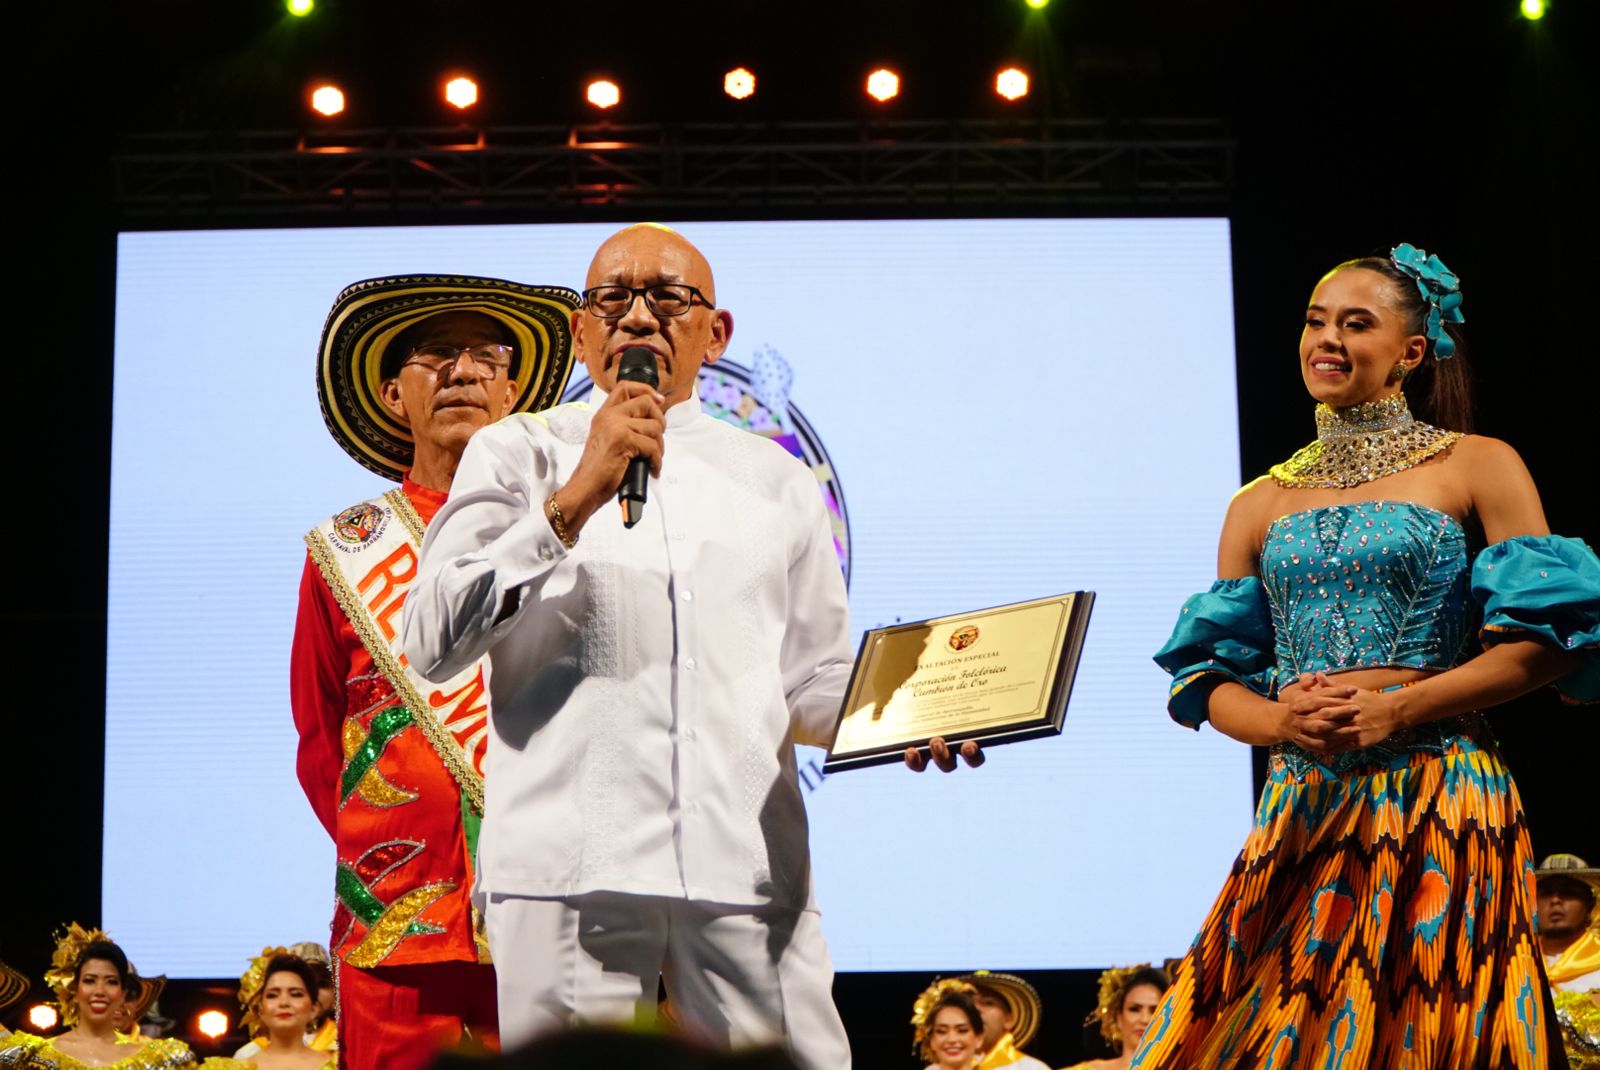 El director del Cumbión de Oro, Gabriel Marriaga, recibiendo el reconocimiento.